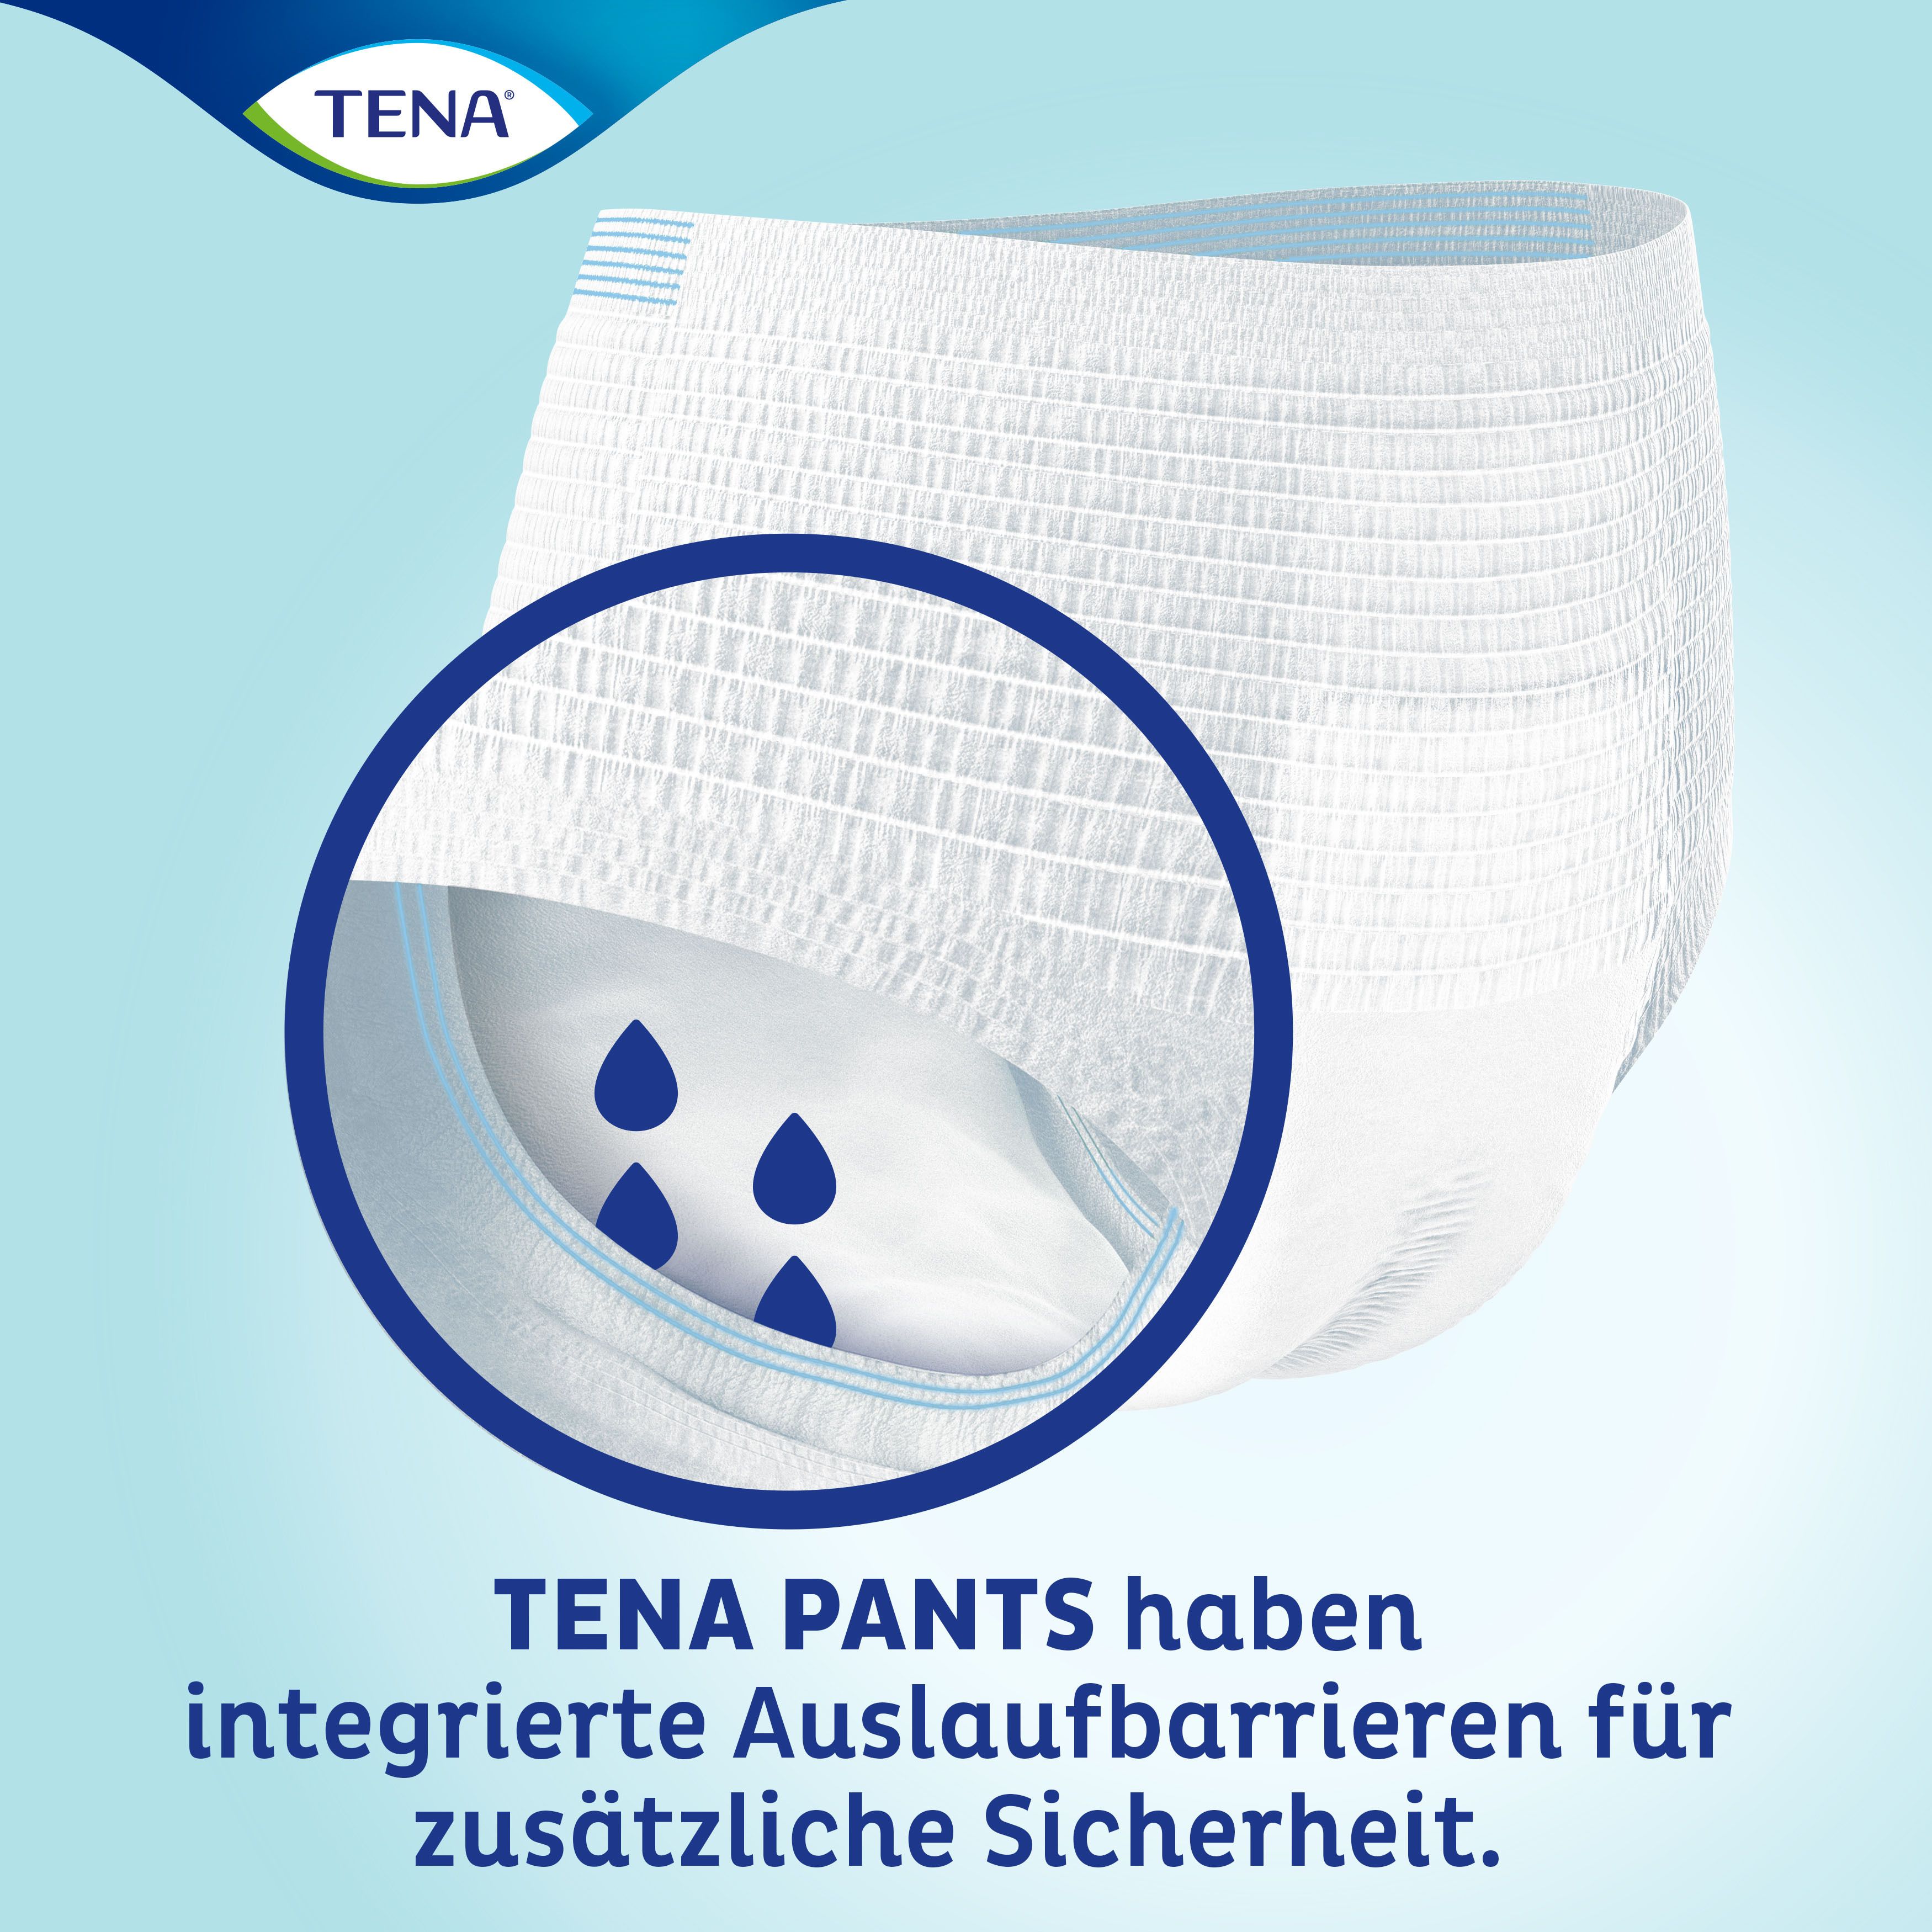 TENA Pants Plus M ConfioFit